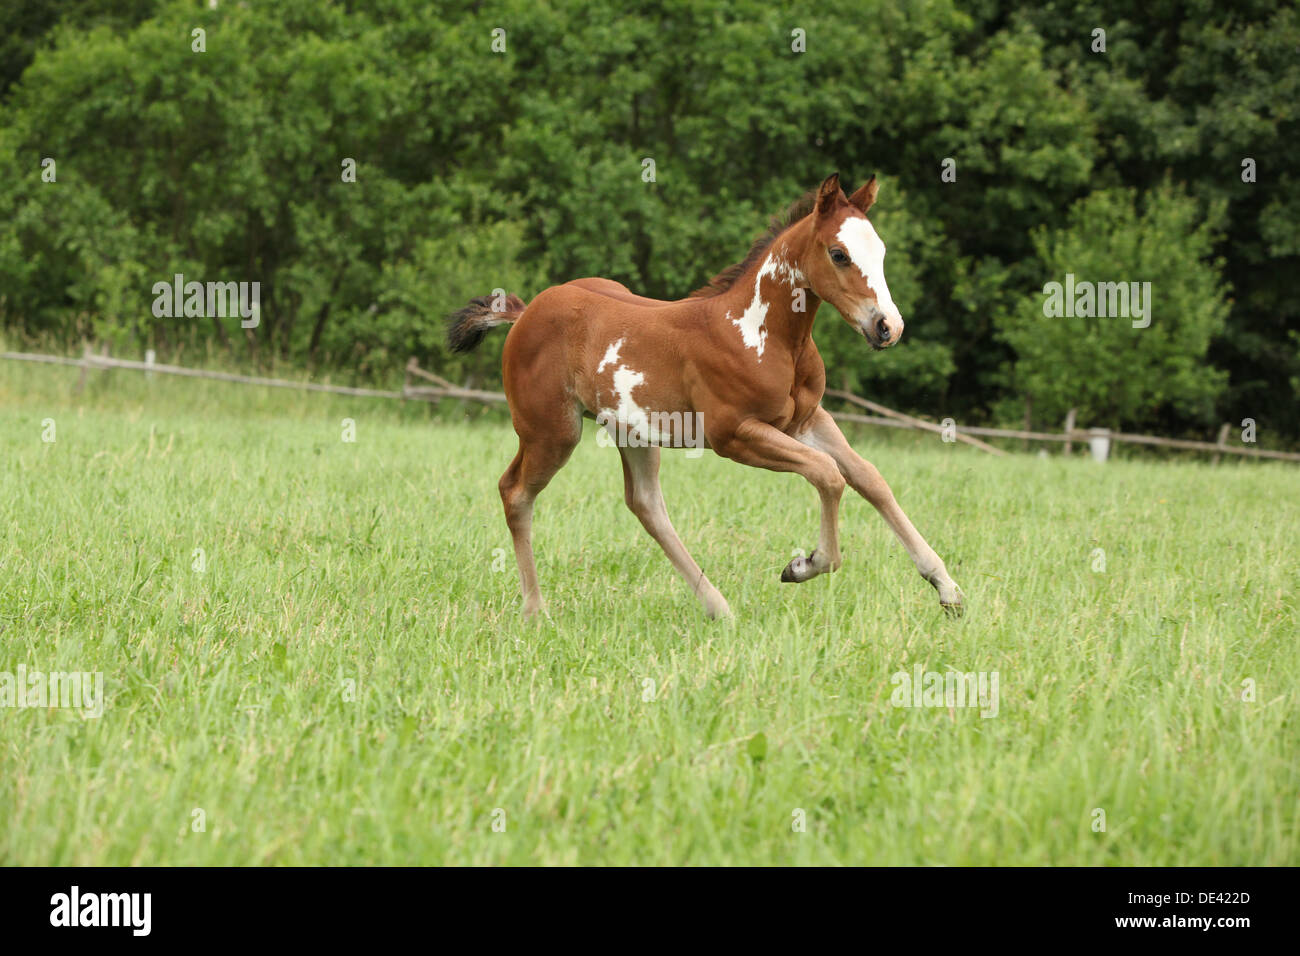 Jolie pouliche Paint horse s'exécutant sur des pâturages Banque D'Images